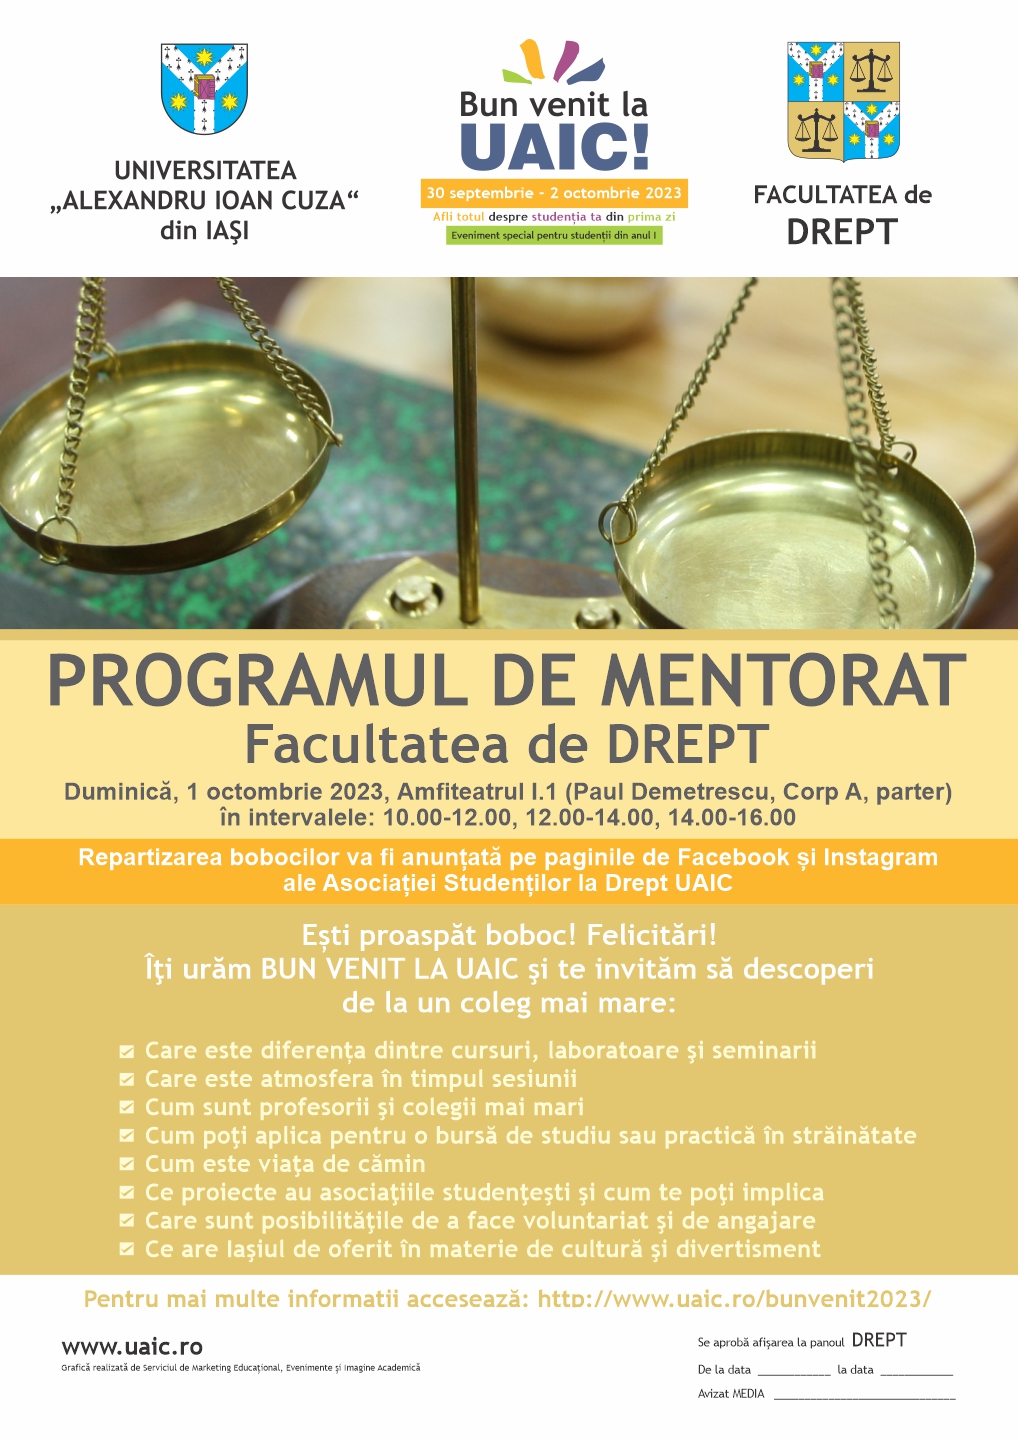 Program de mentorat (se va desfășura în 3 intervale orare: 10.00-12.00; 12.00-14.00 și 14.00-16.00)